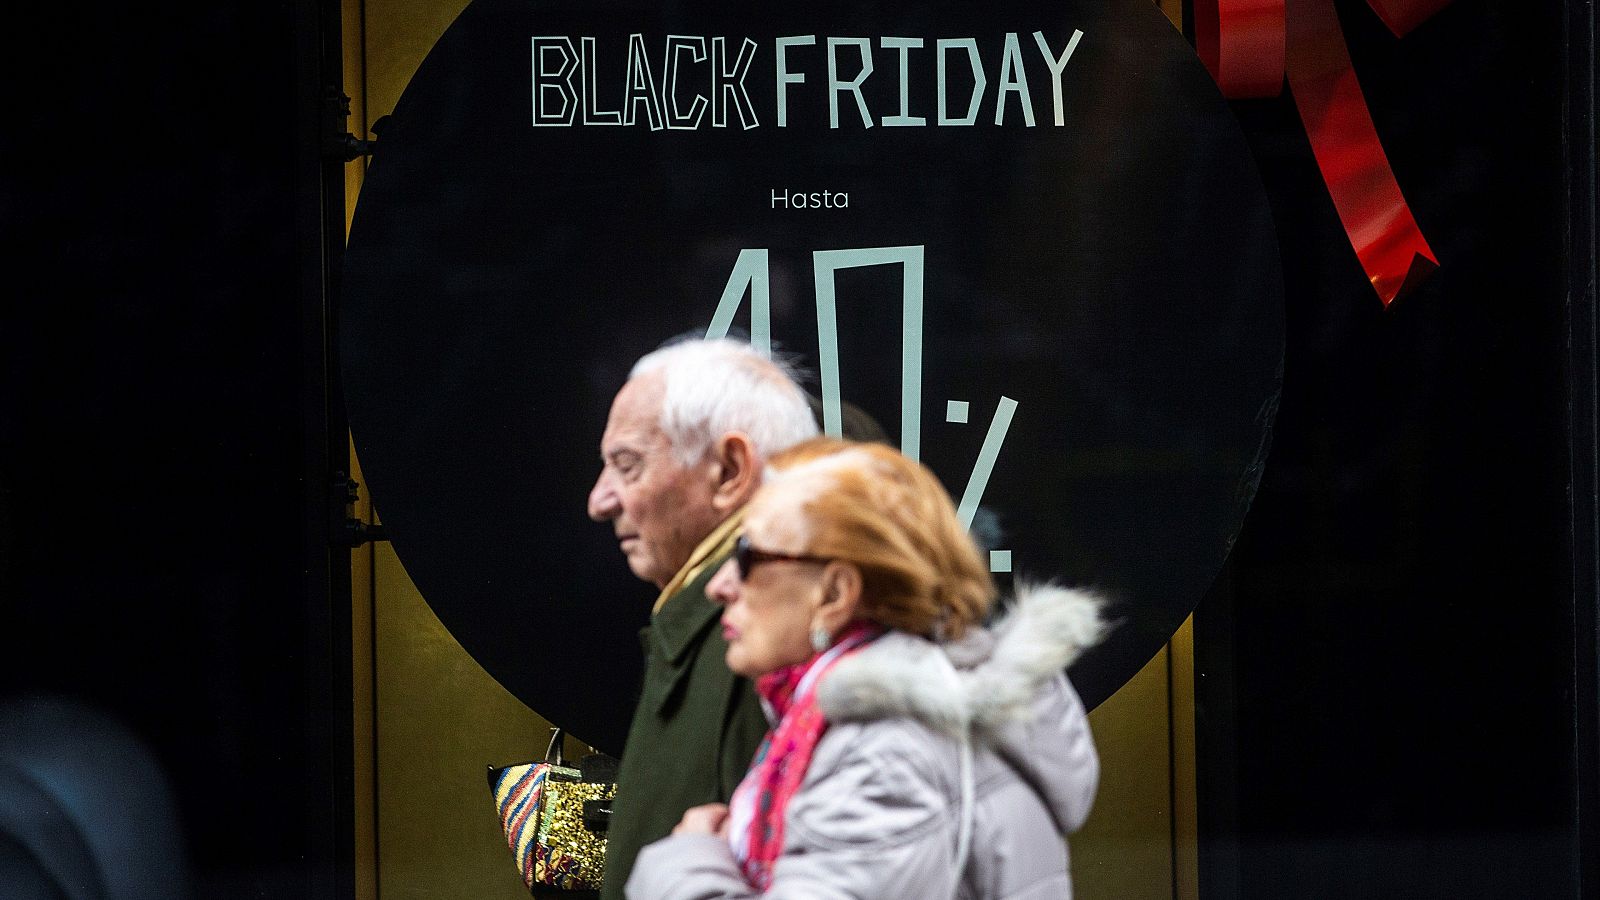 El Black Friday, la jornada de descuentos masivos que se celebra este viernes, se nota cada vez más en España aunque su origen está en Estados Unidos. Llegó como el día del año en el que se podían cazar las mayores gangas -el último viernes del mes d